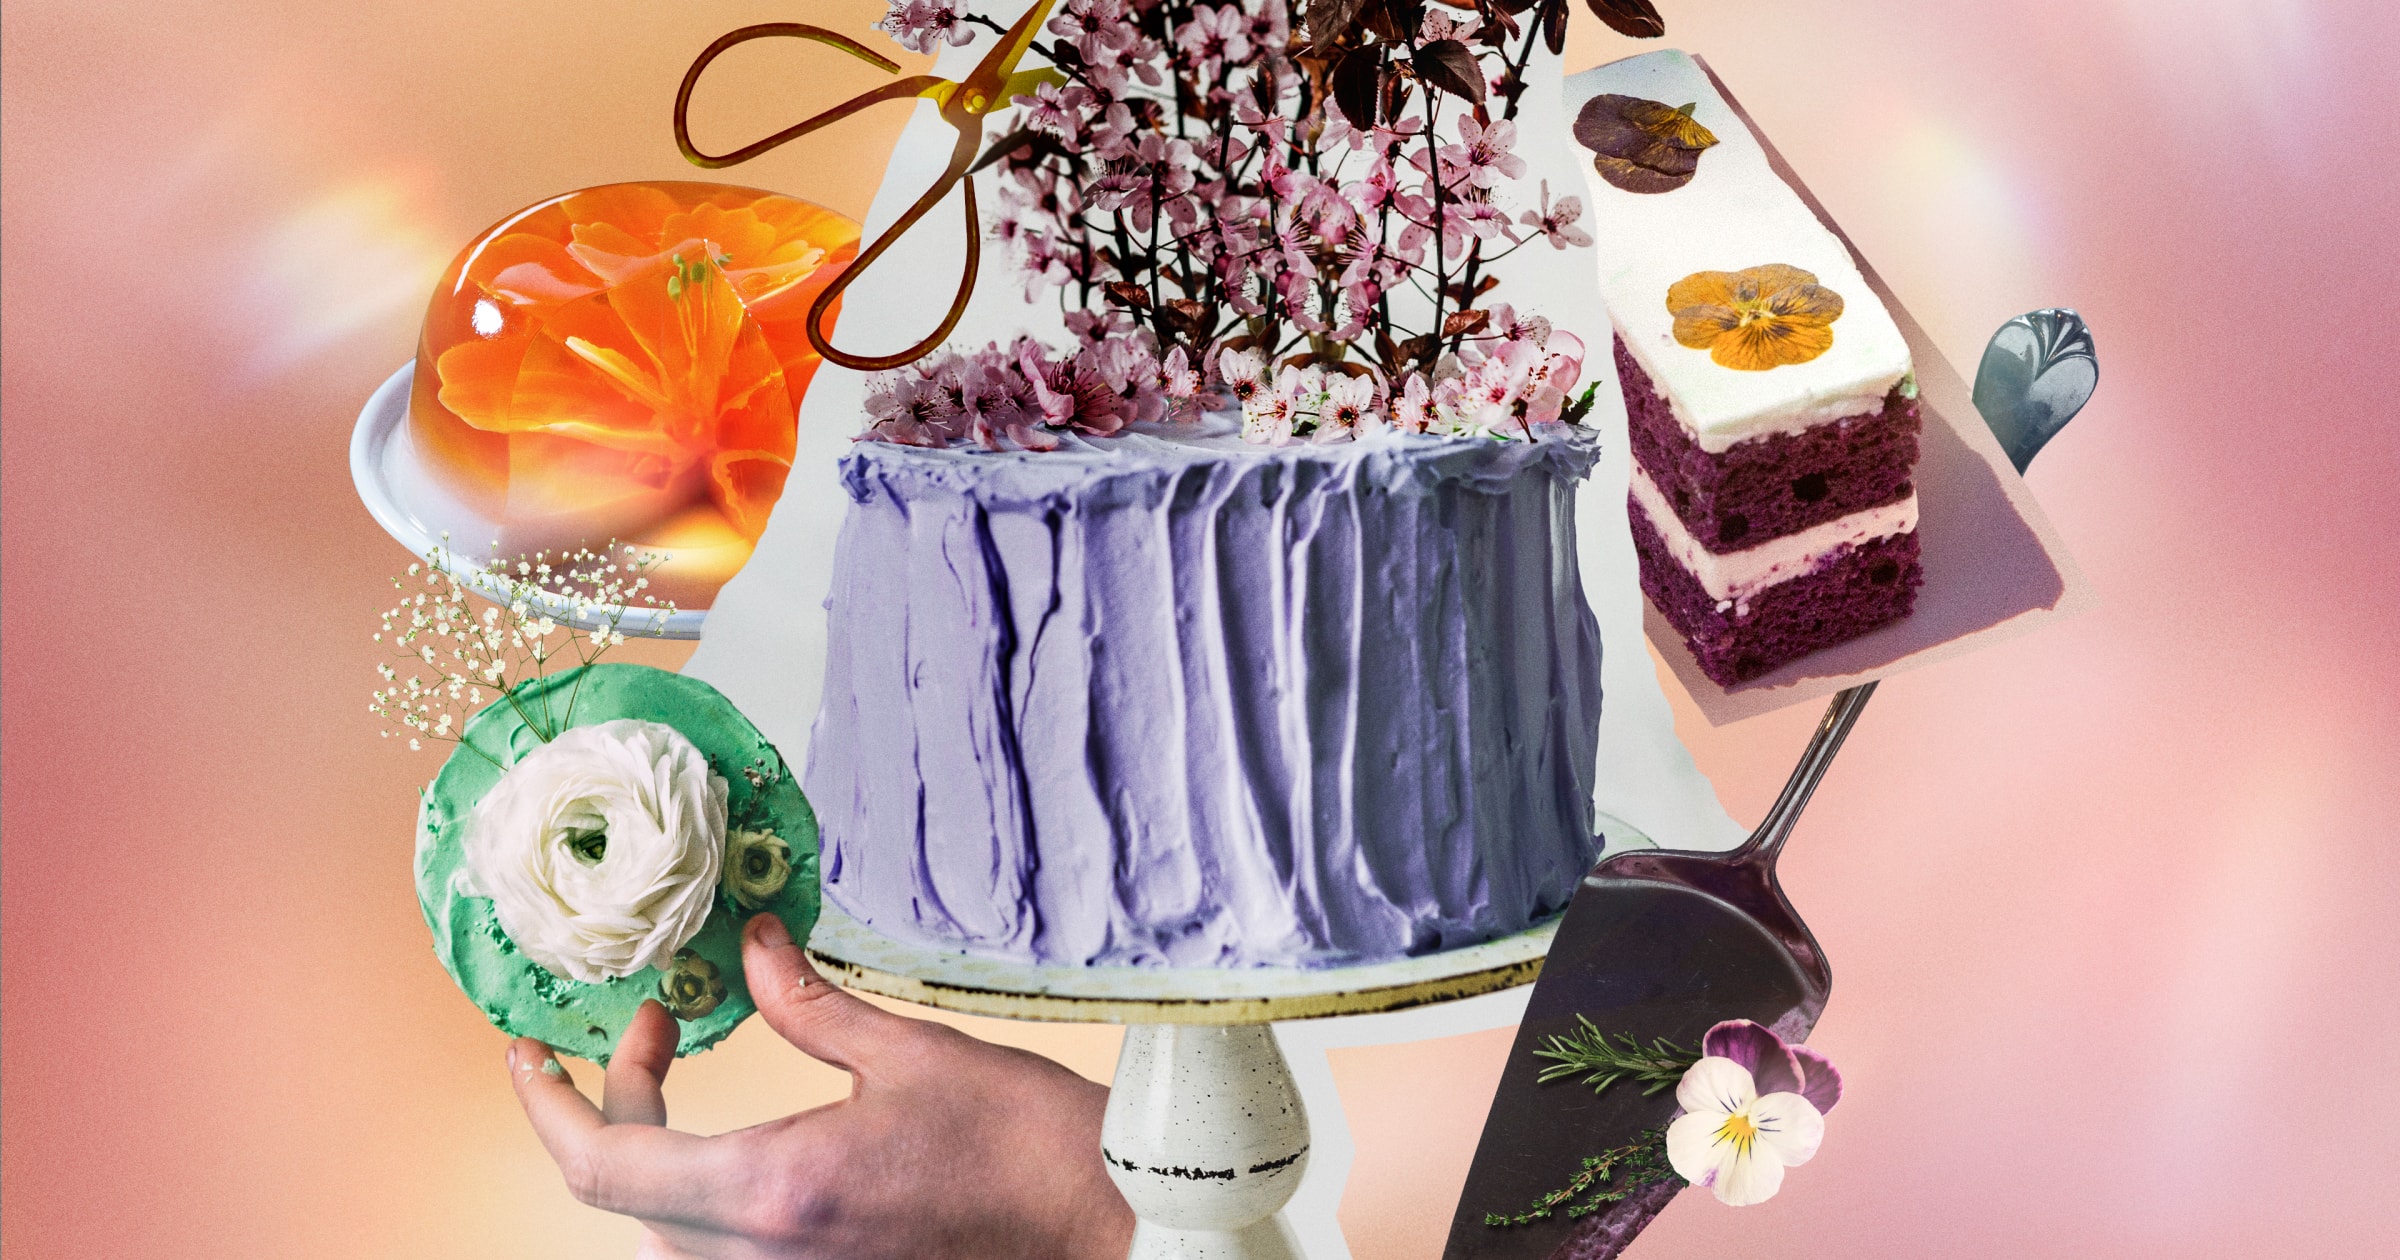 630 idées de Cake design  idée gateau, gateau, gateau anniversaire